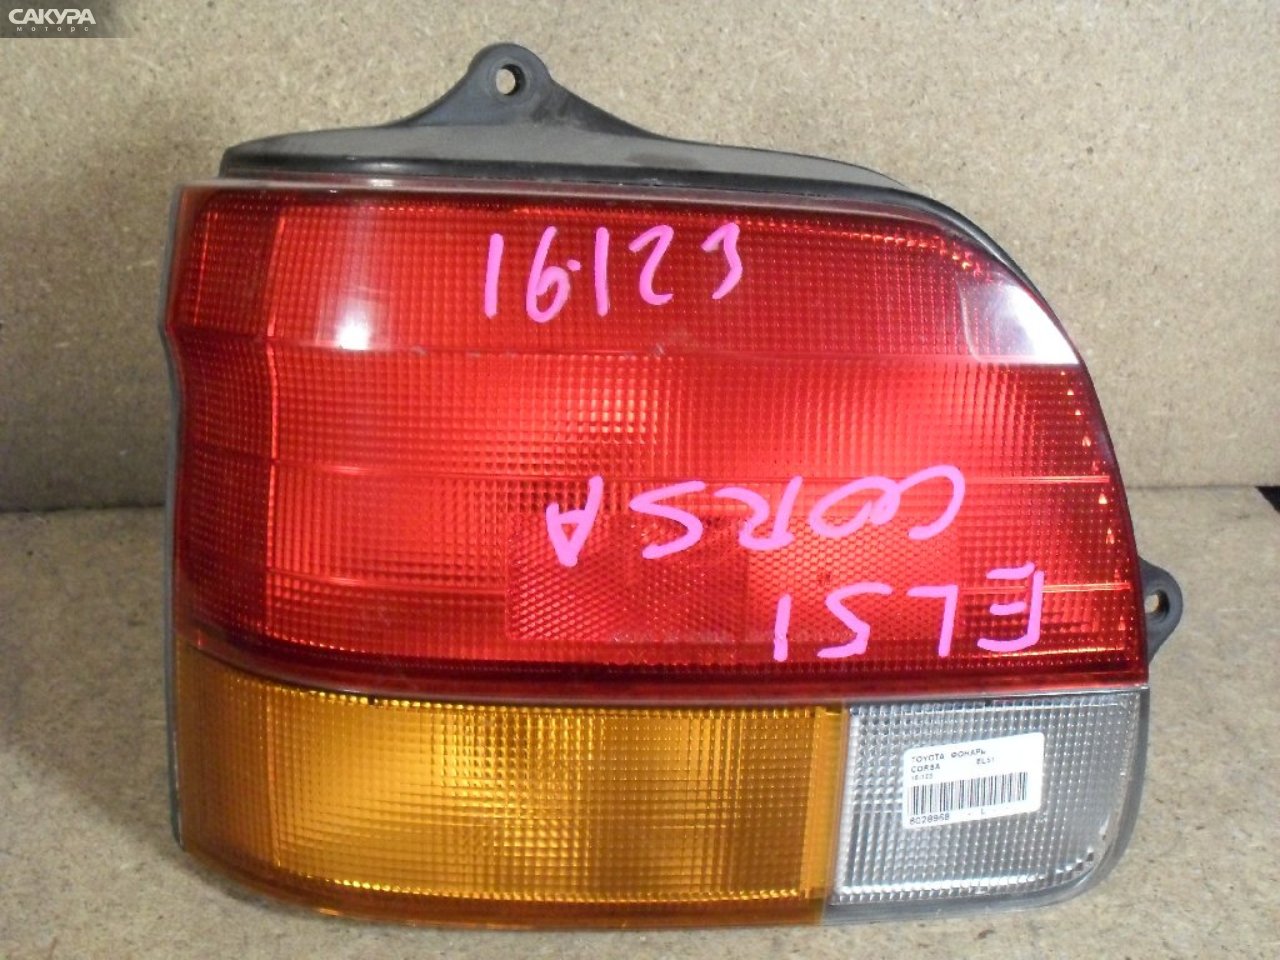 Фонарь стоп-сигнала левый Toyota Corsa EL51 16-123: купить в Сакура Абакан.